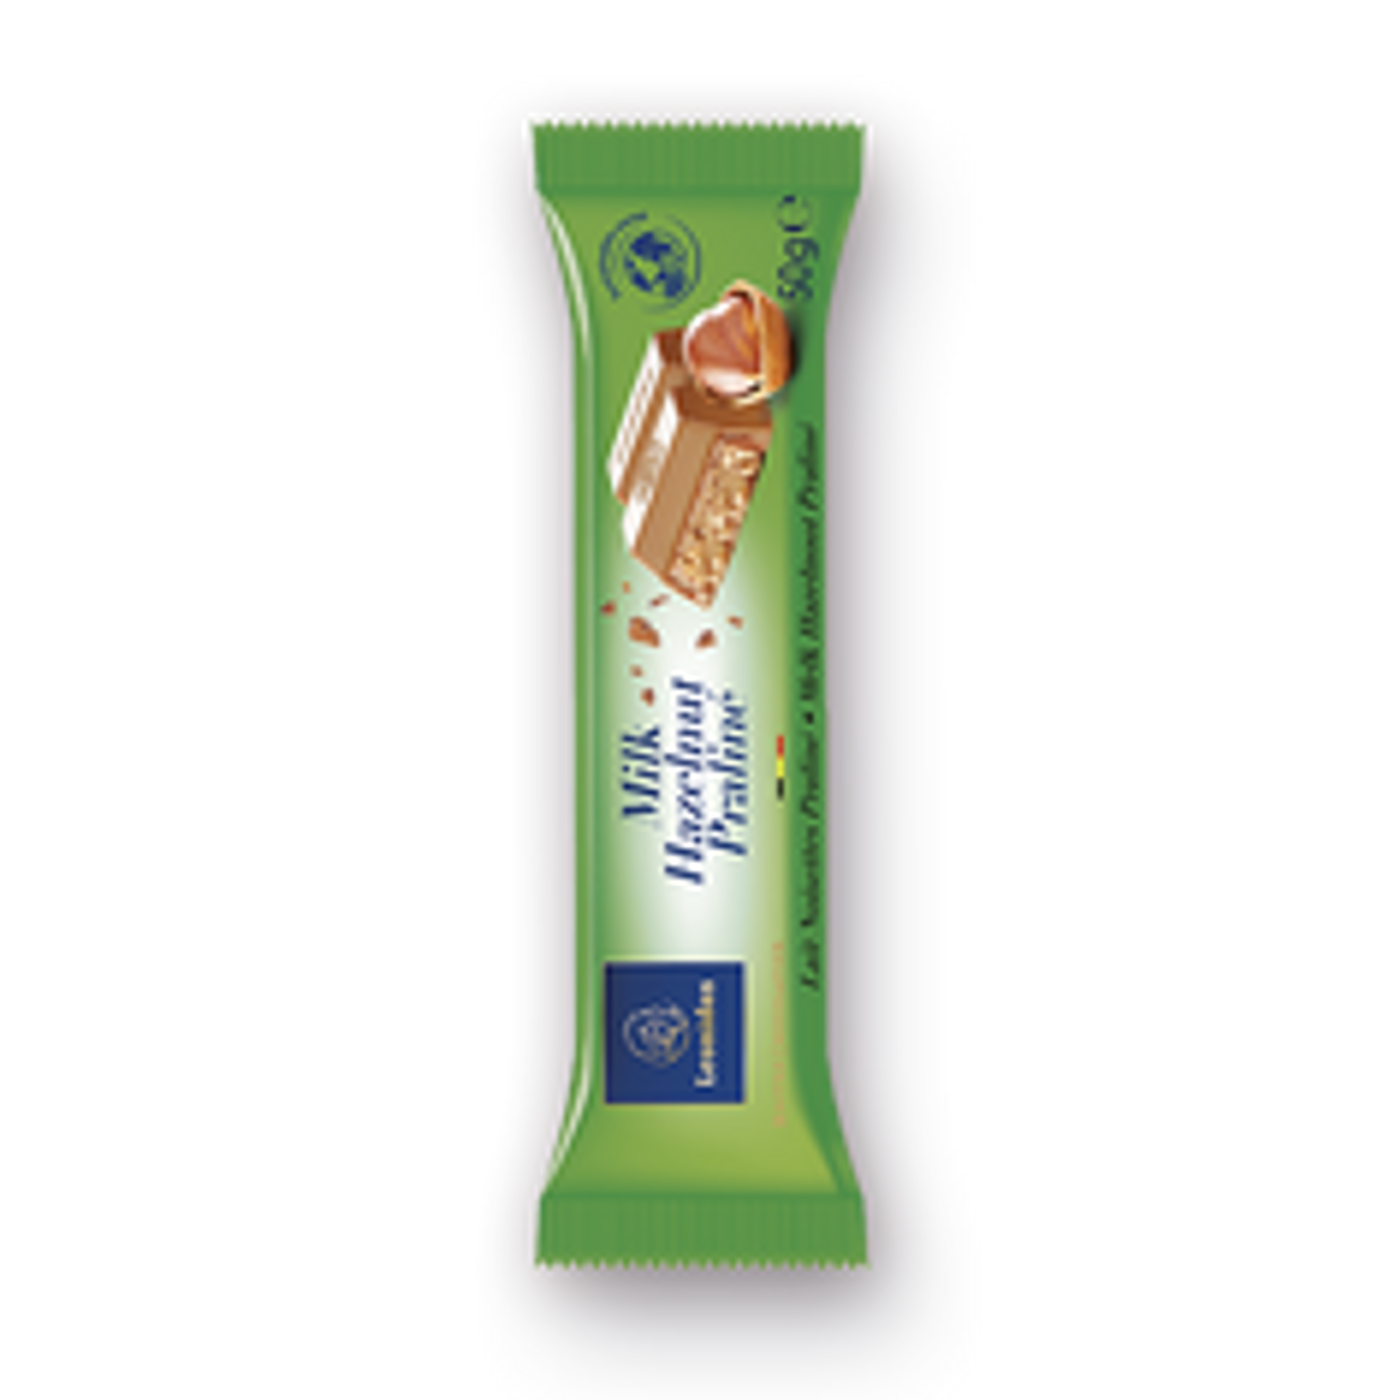 50g Milk Hazelnut Chocolate Bar